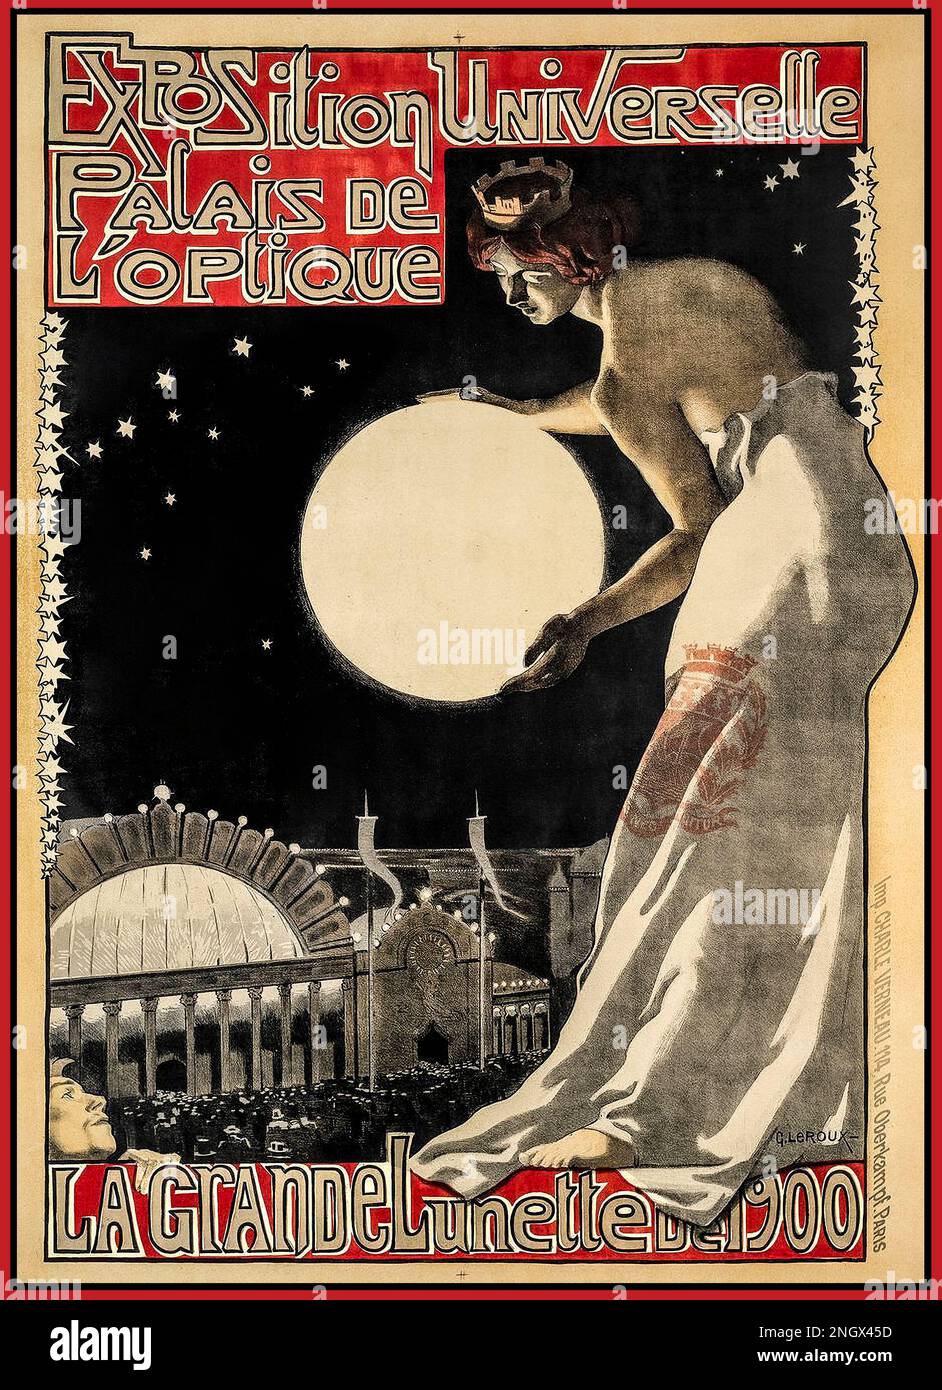 Vintage French Poster Exposition Universelle, La Grande Lunette de 1900, Palais de l'Optique Paris Frankreich Stockfoto